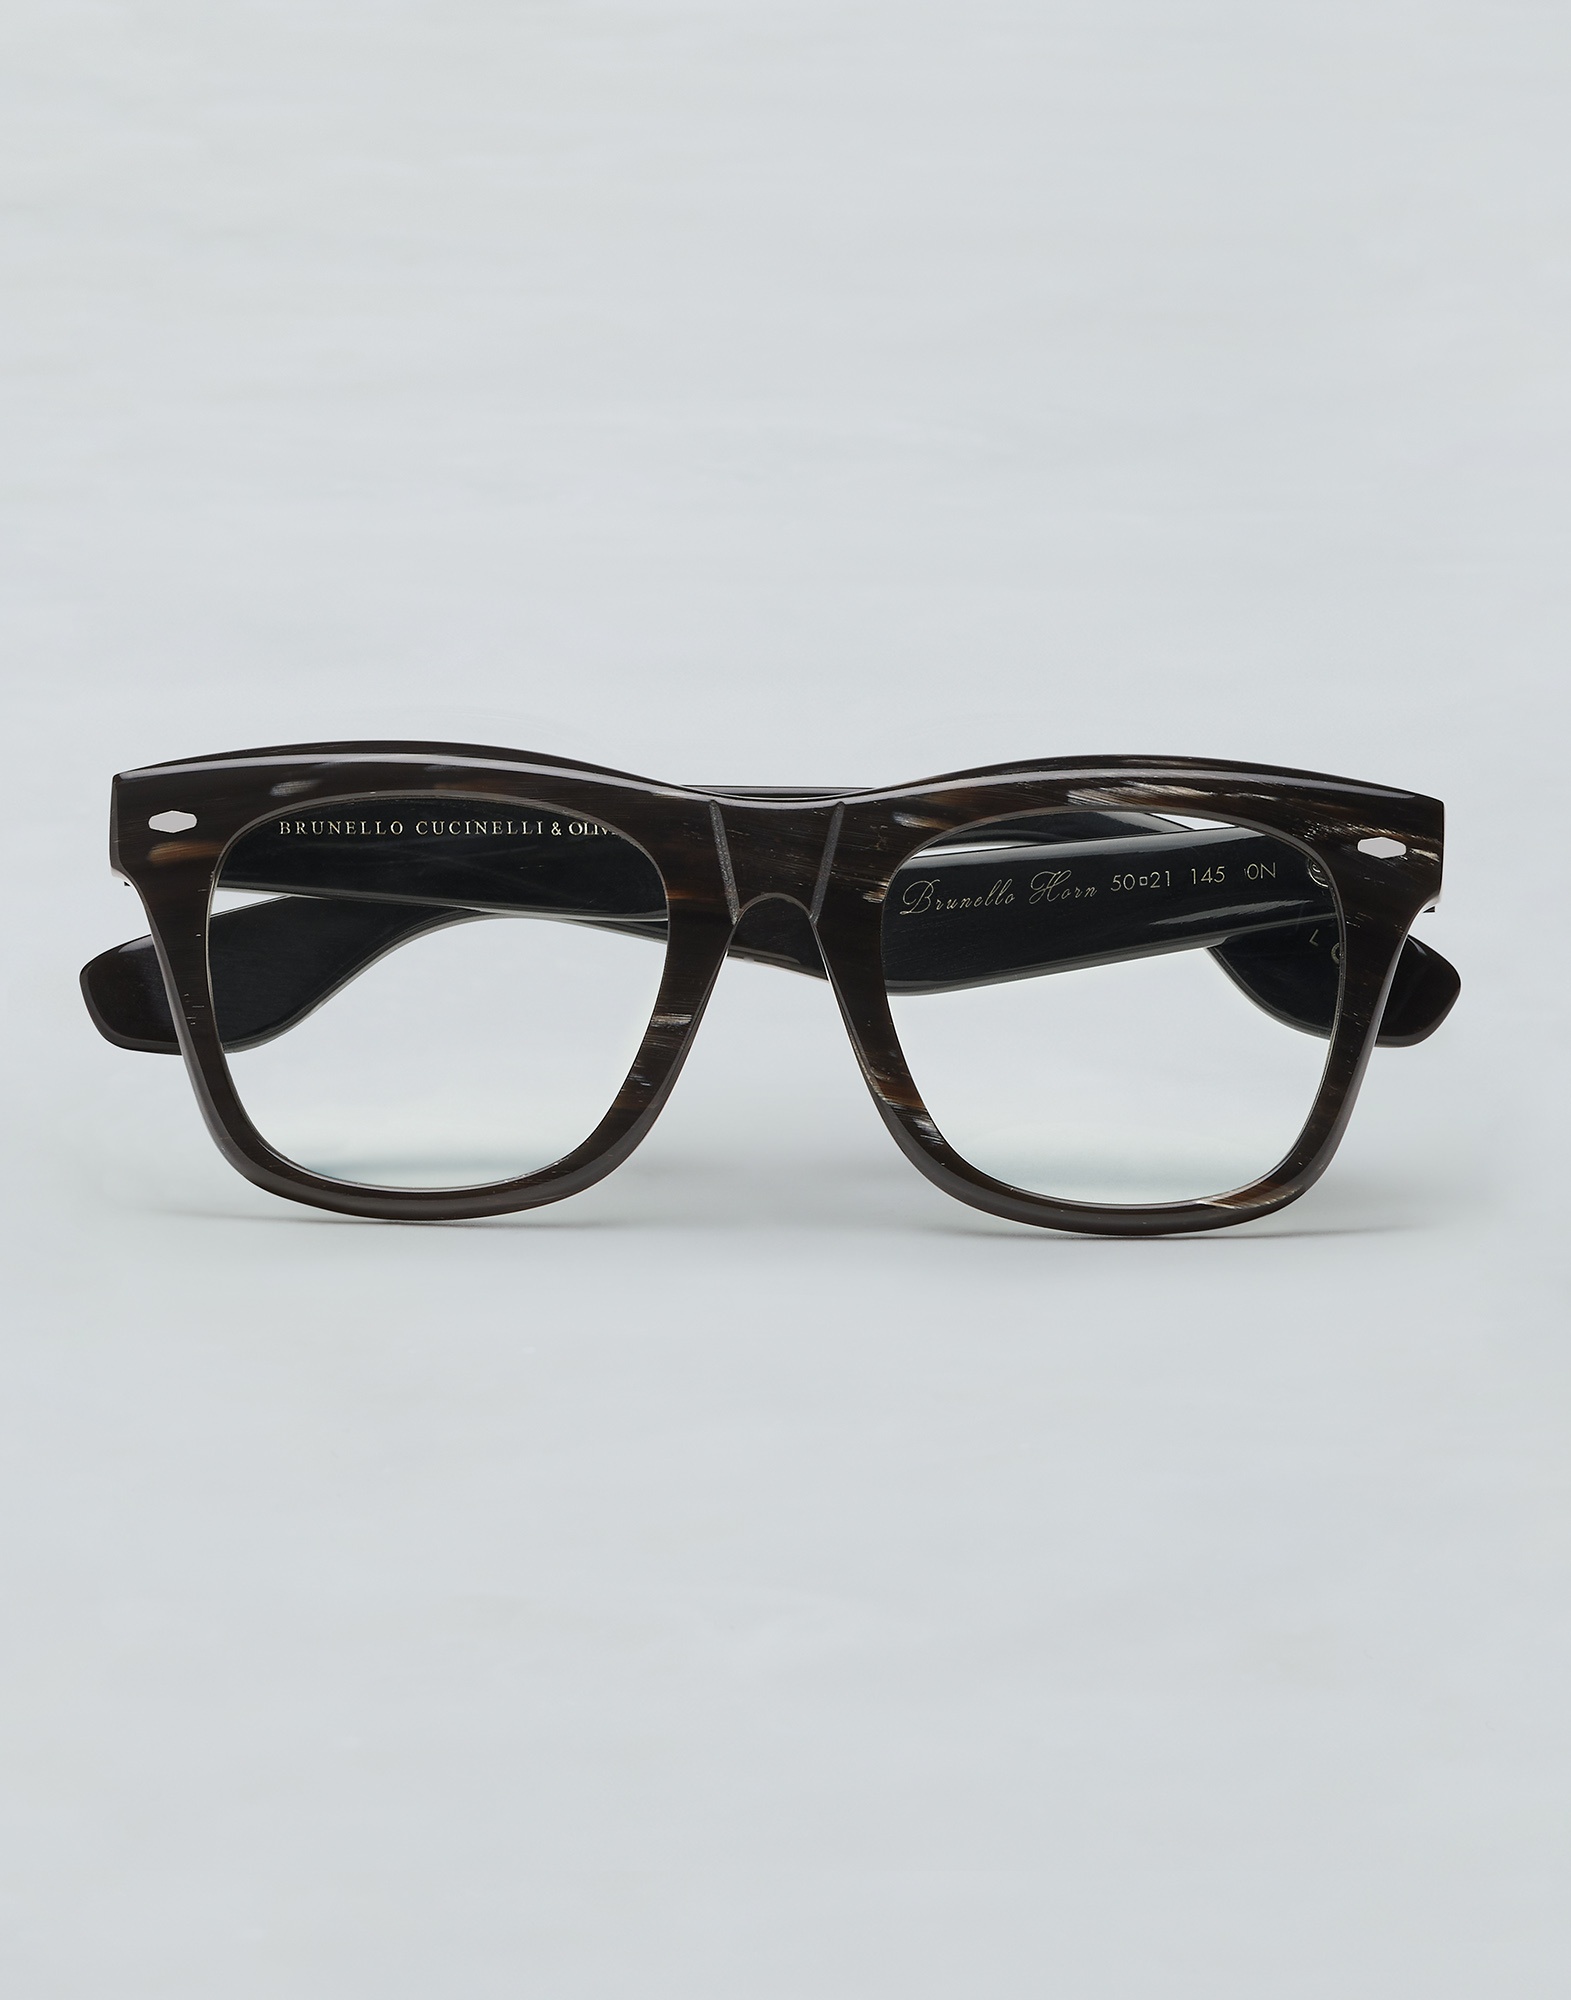 Mr. Brunello horn glasses with blue-light blocking lenses - 1